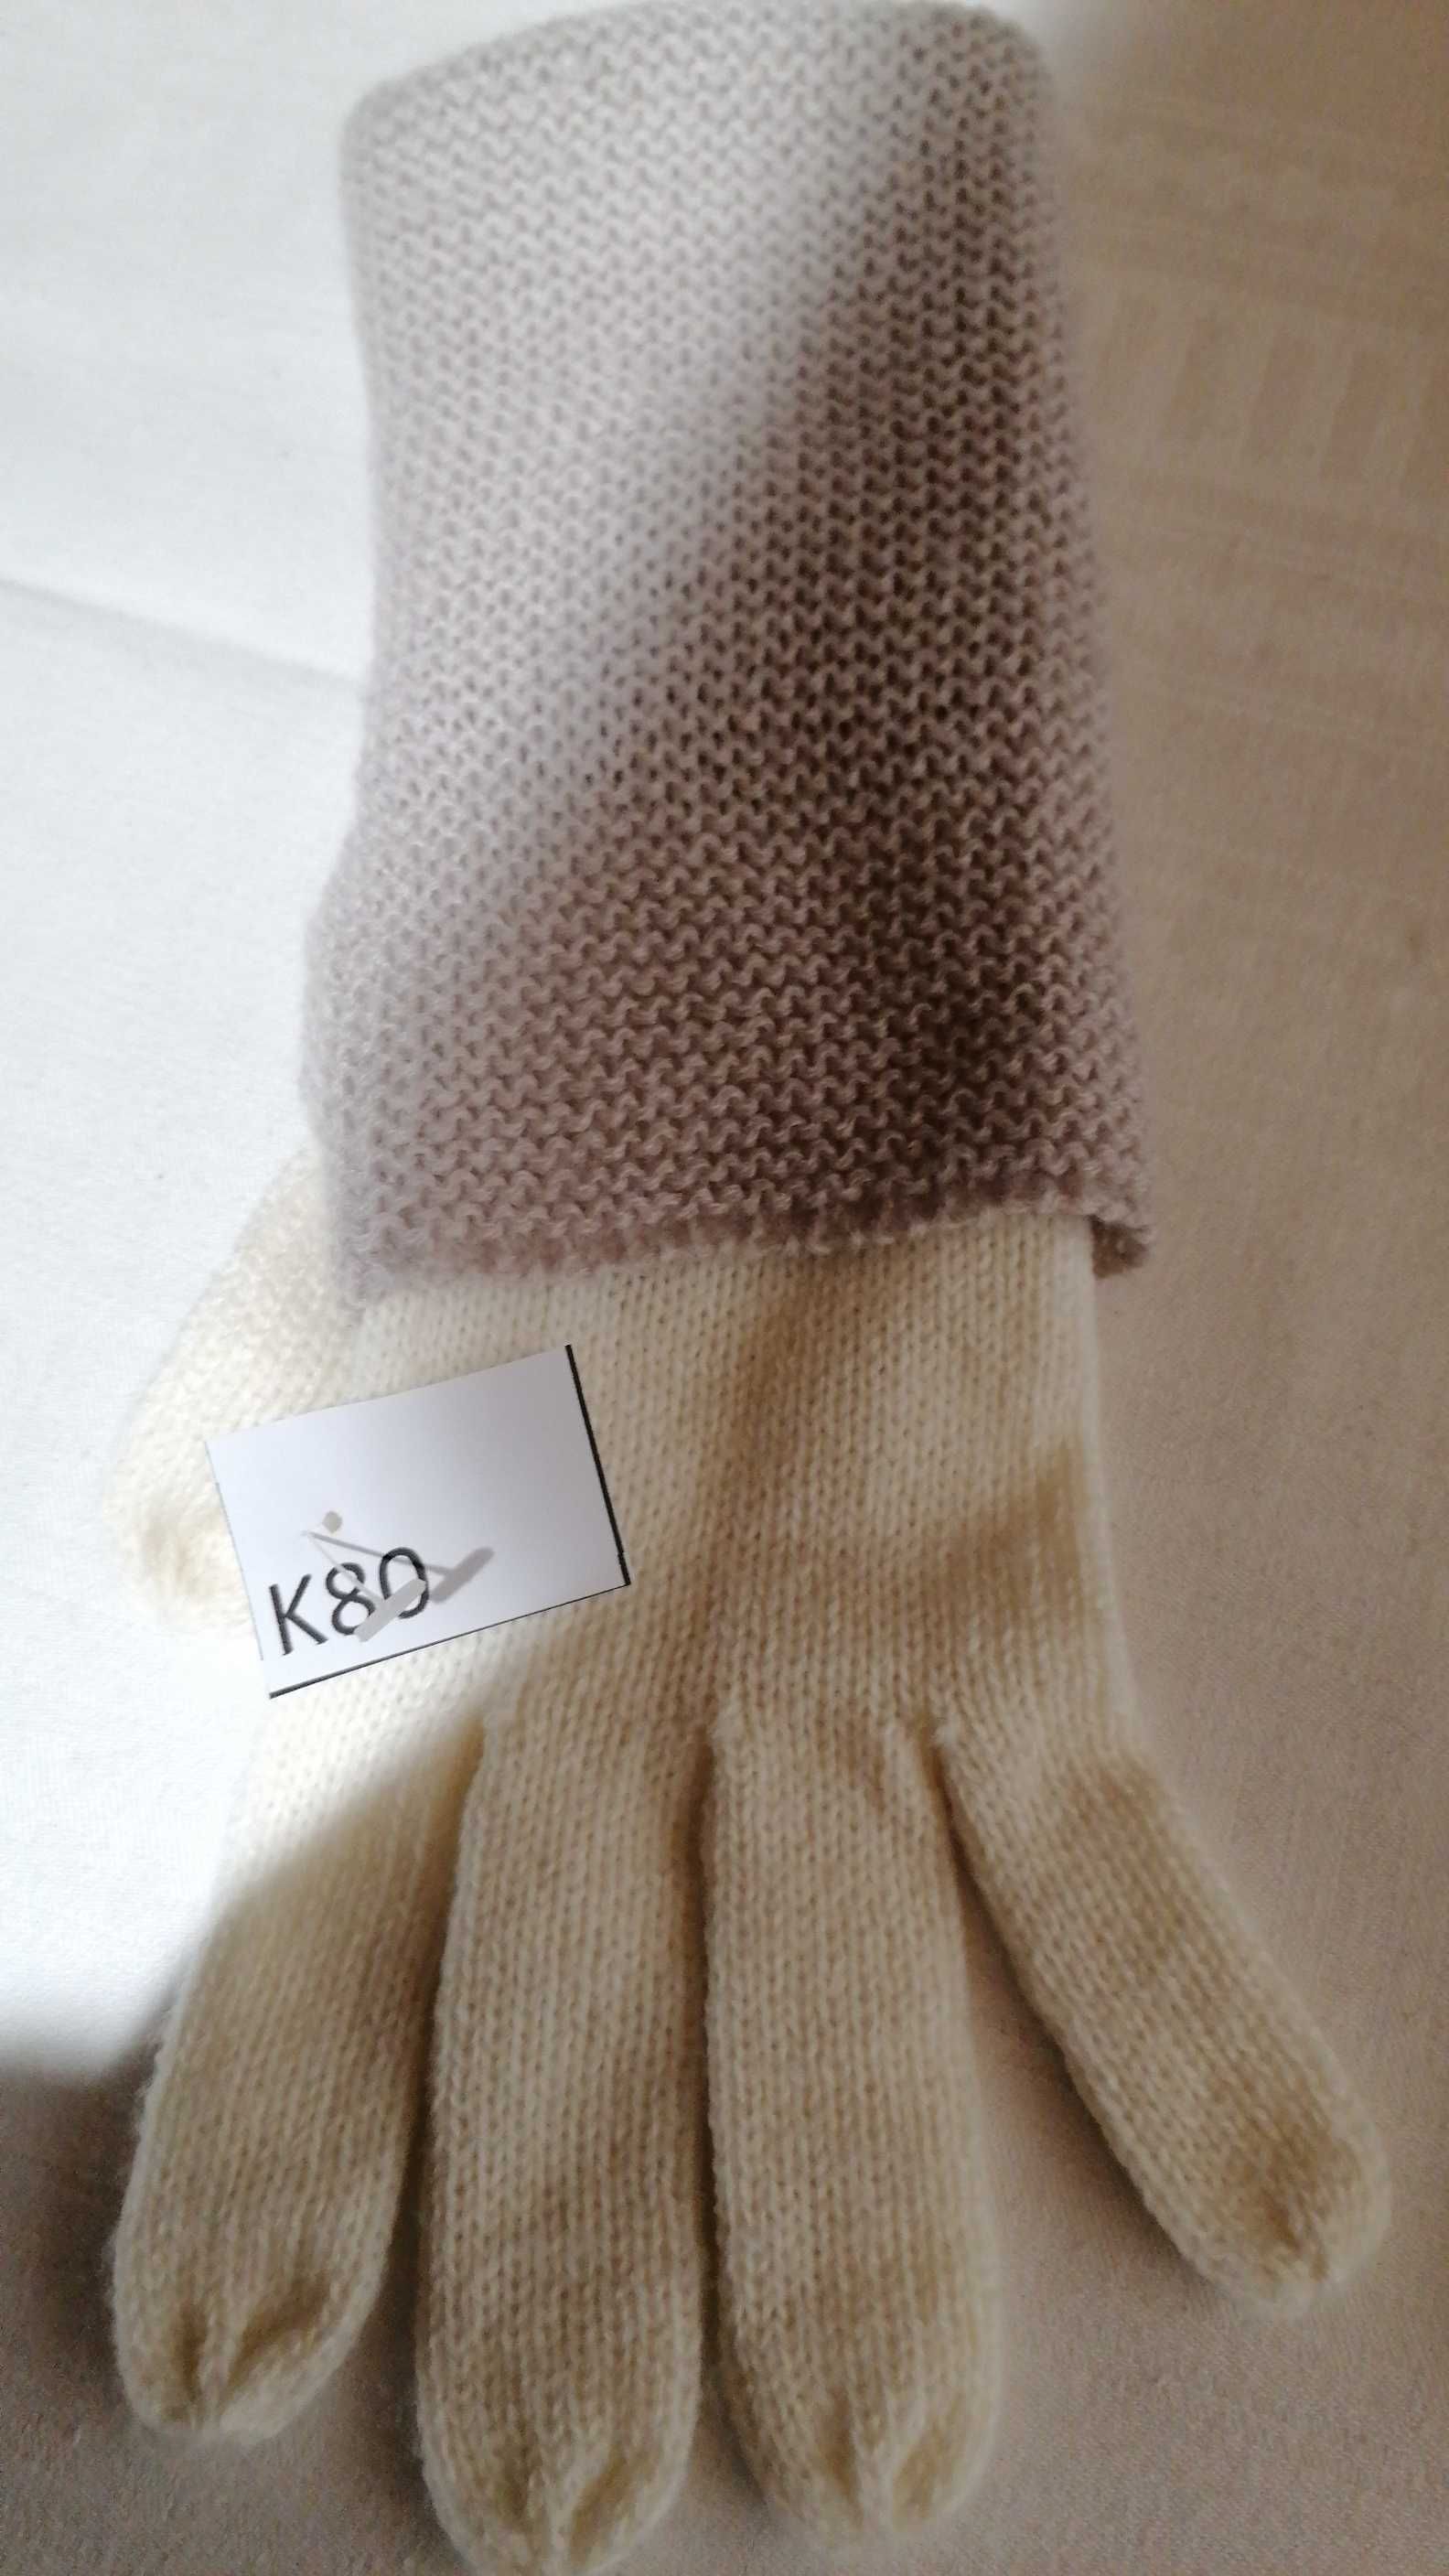 K/80 Rękawiczki damskie robione na drutach Handmade r. M